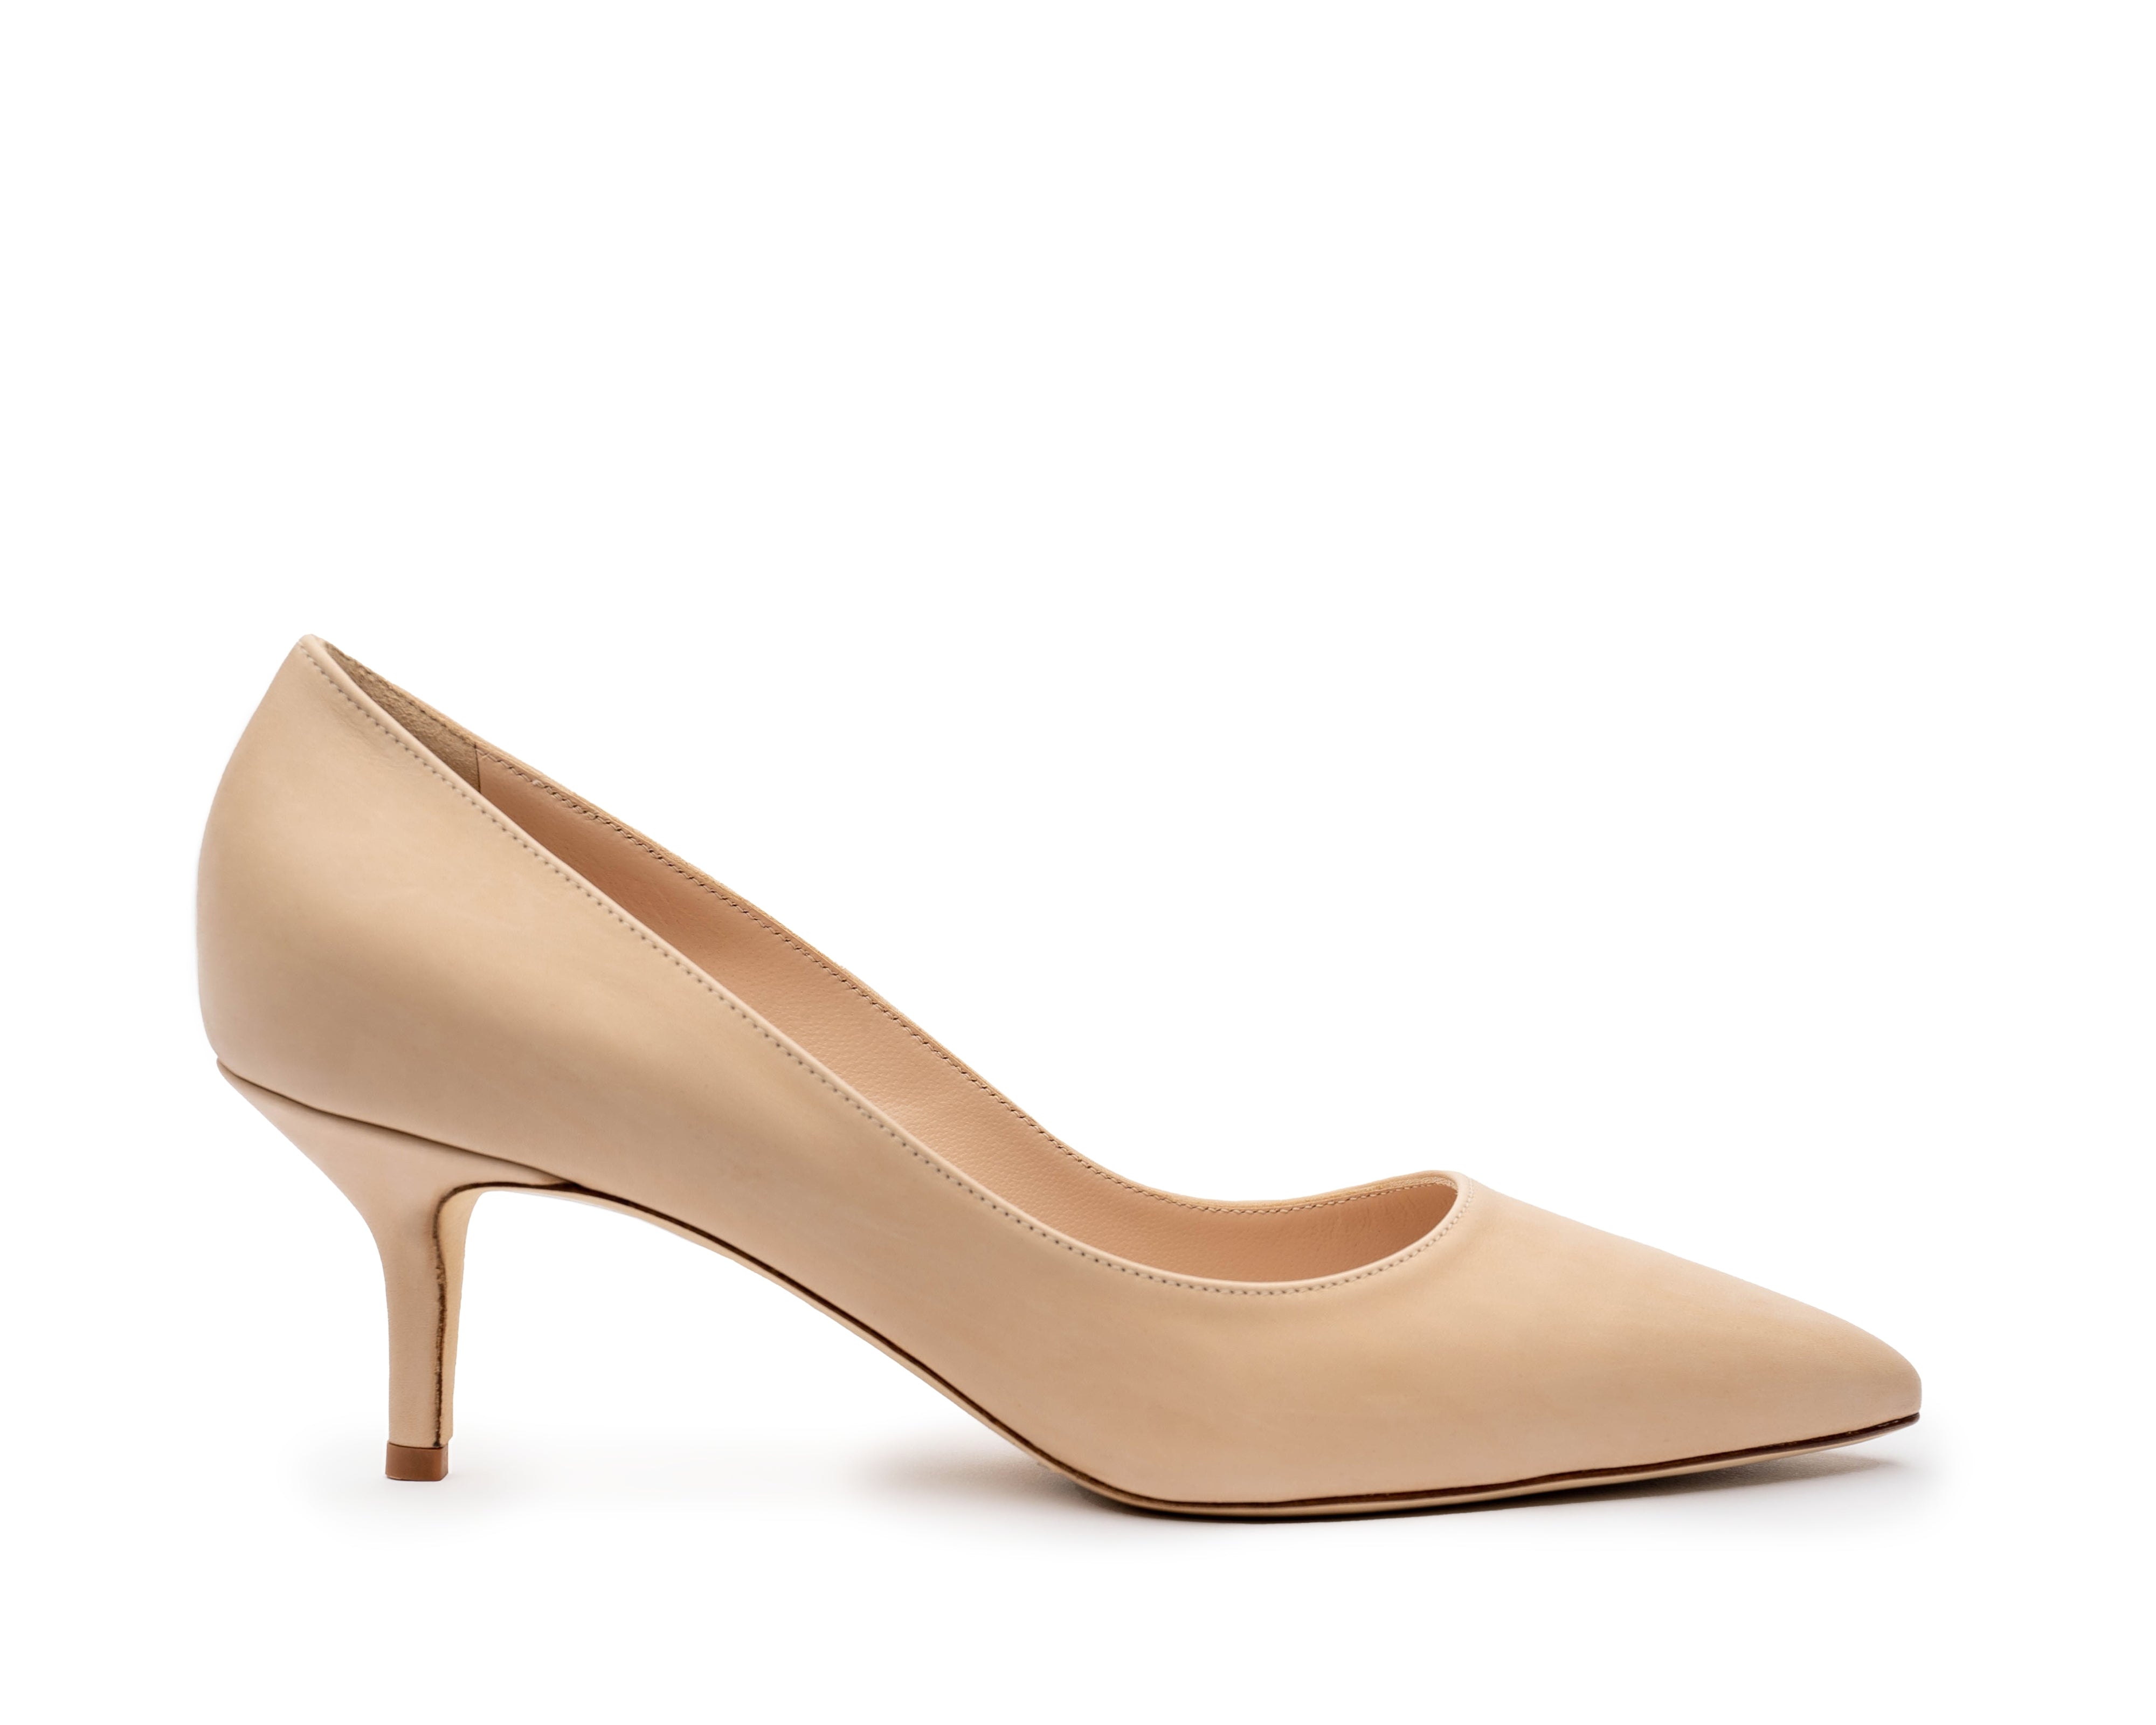 Jeneba Barrie Nude Footwear - Pumps - Loafers - Women's shoes - Heels